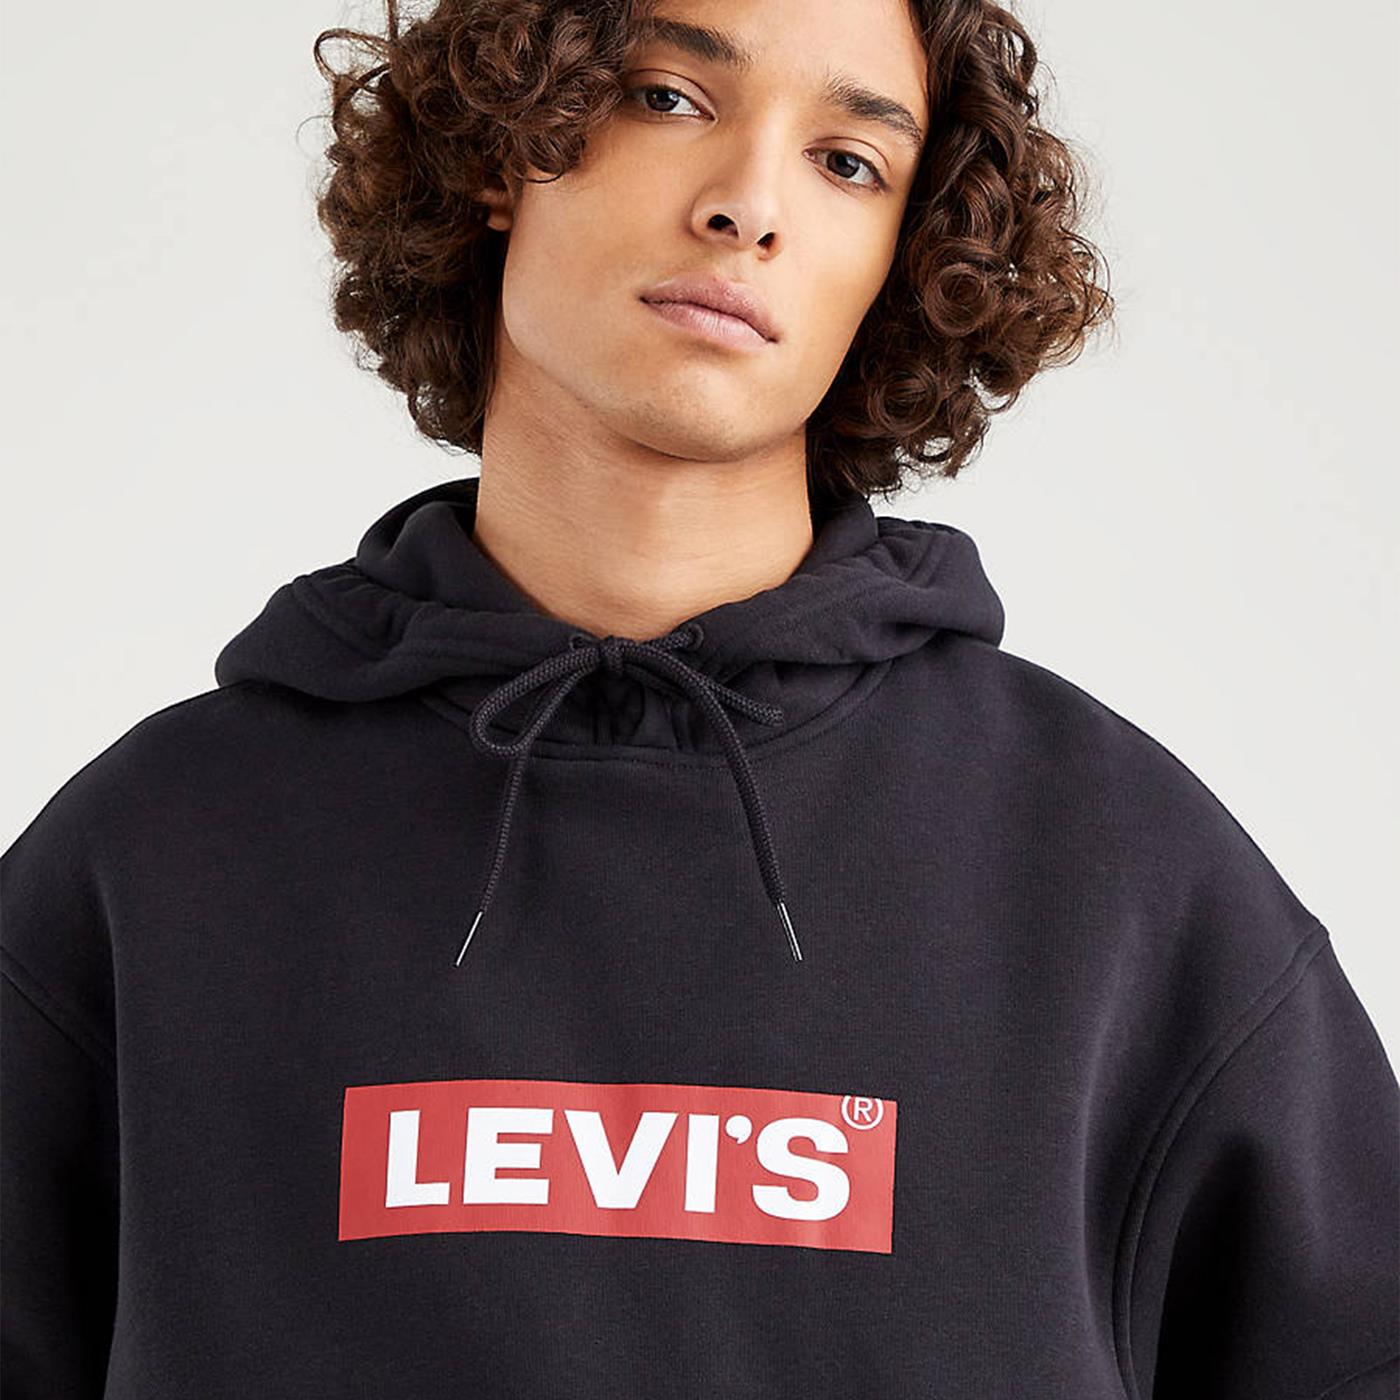 Levi's® Men's Graphic Sweatshirt